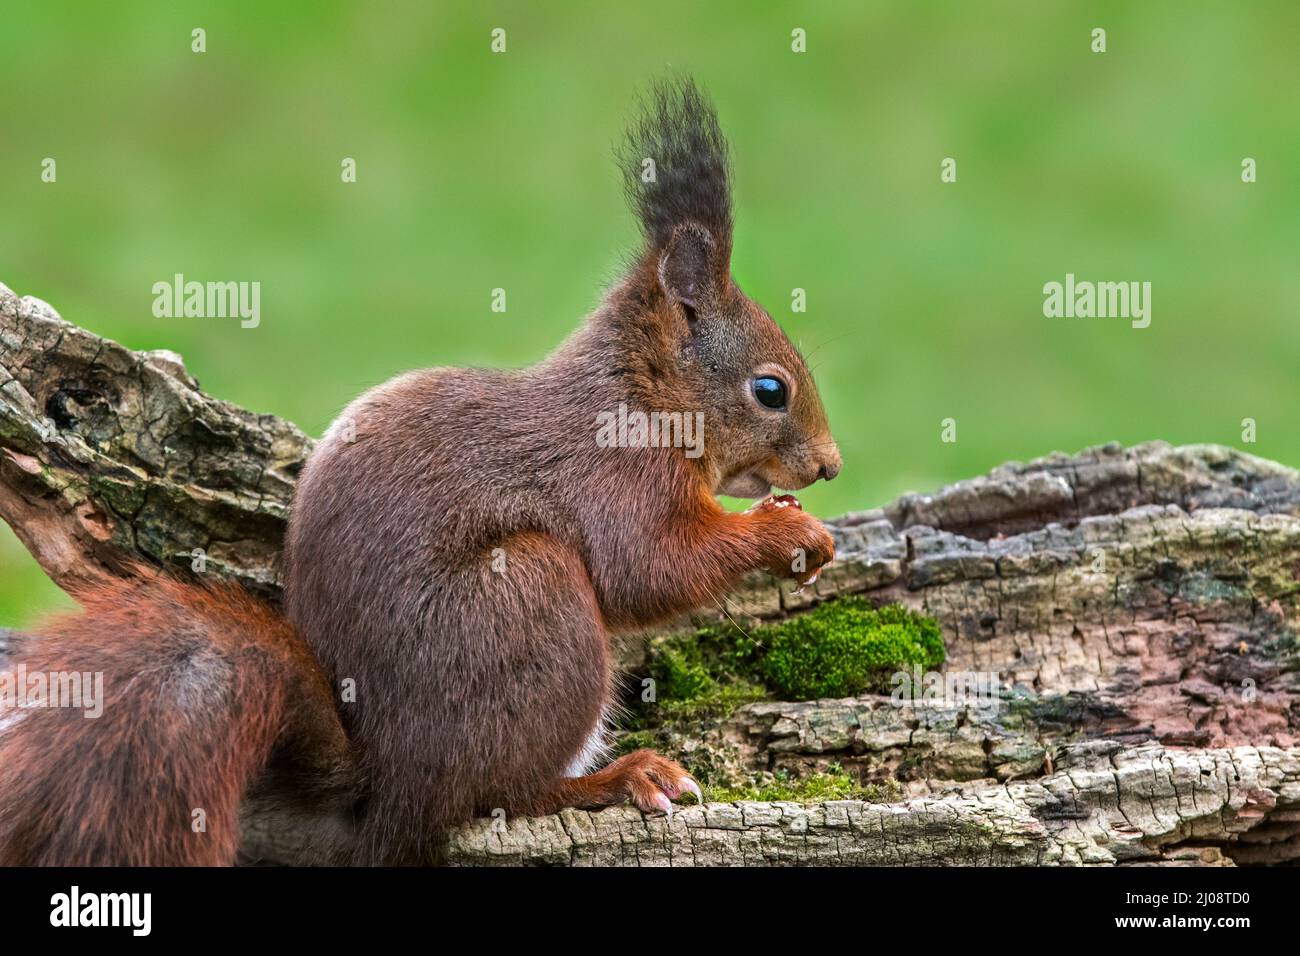 Cute scoiattolo rosso eurasiatico (Sciurus vulgaris) con grandi orafi che mangiano nocciole / noci dalla cache alimentare nascosta in grumo di albero in primavera Foto Stock